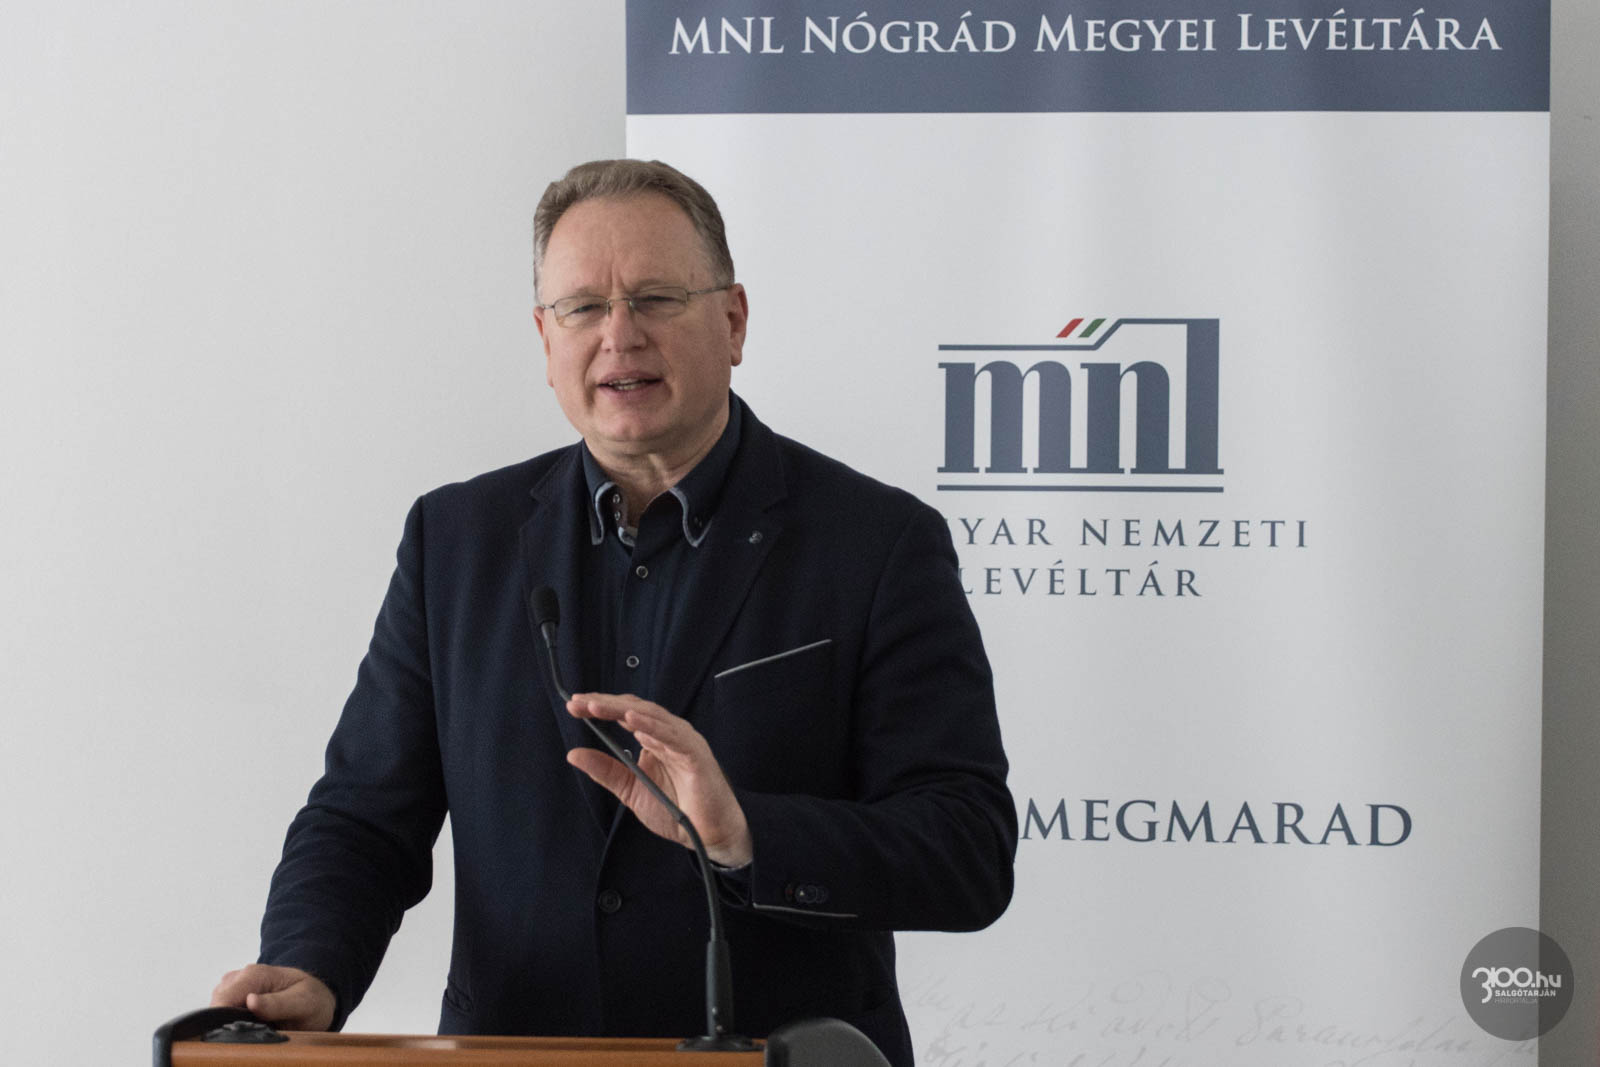 3100.hu Fotó: Skuczi Nándor, a Nógrád Megyei Önkormányzat Közgyűlésének elnöke a levéltári rendezvényen